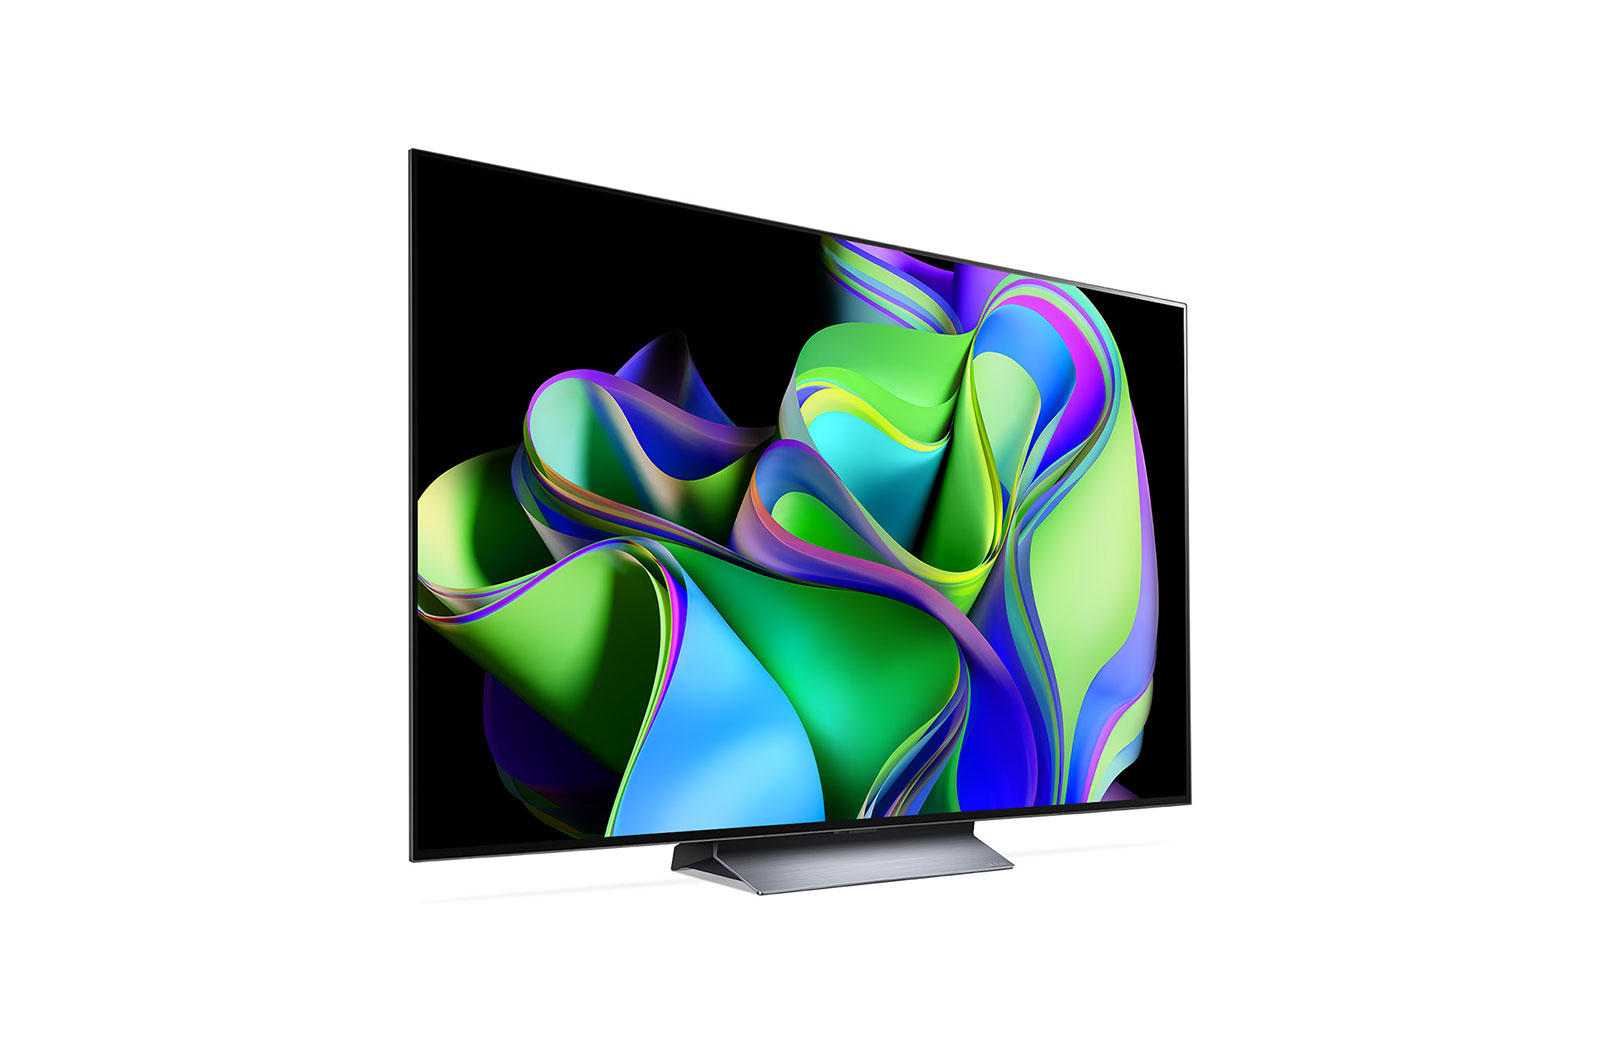 Televisiones - Televisión y Vídeo: Electrónica: LED & LCD TVs, QLED TVs,  OLED TVs, Televisions y más 